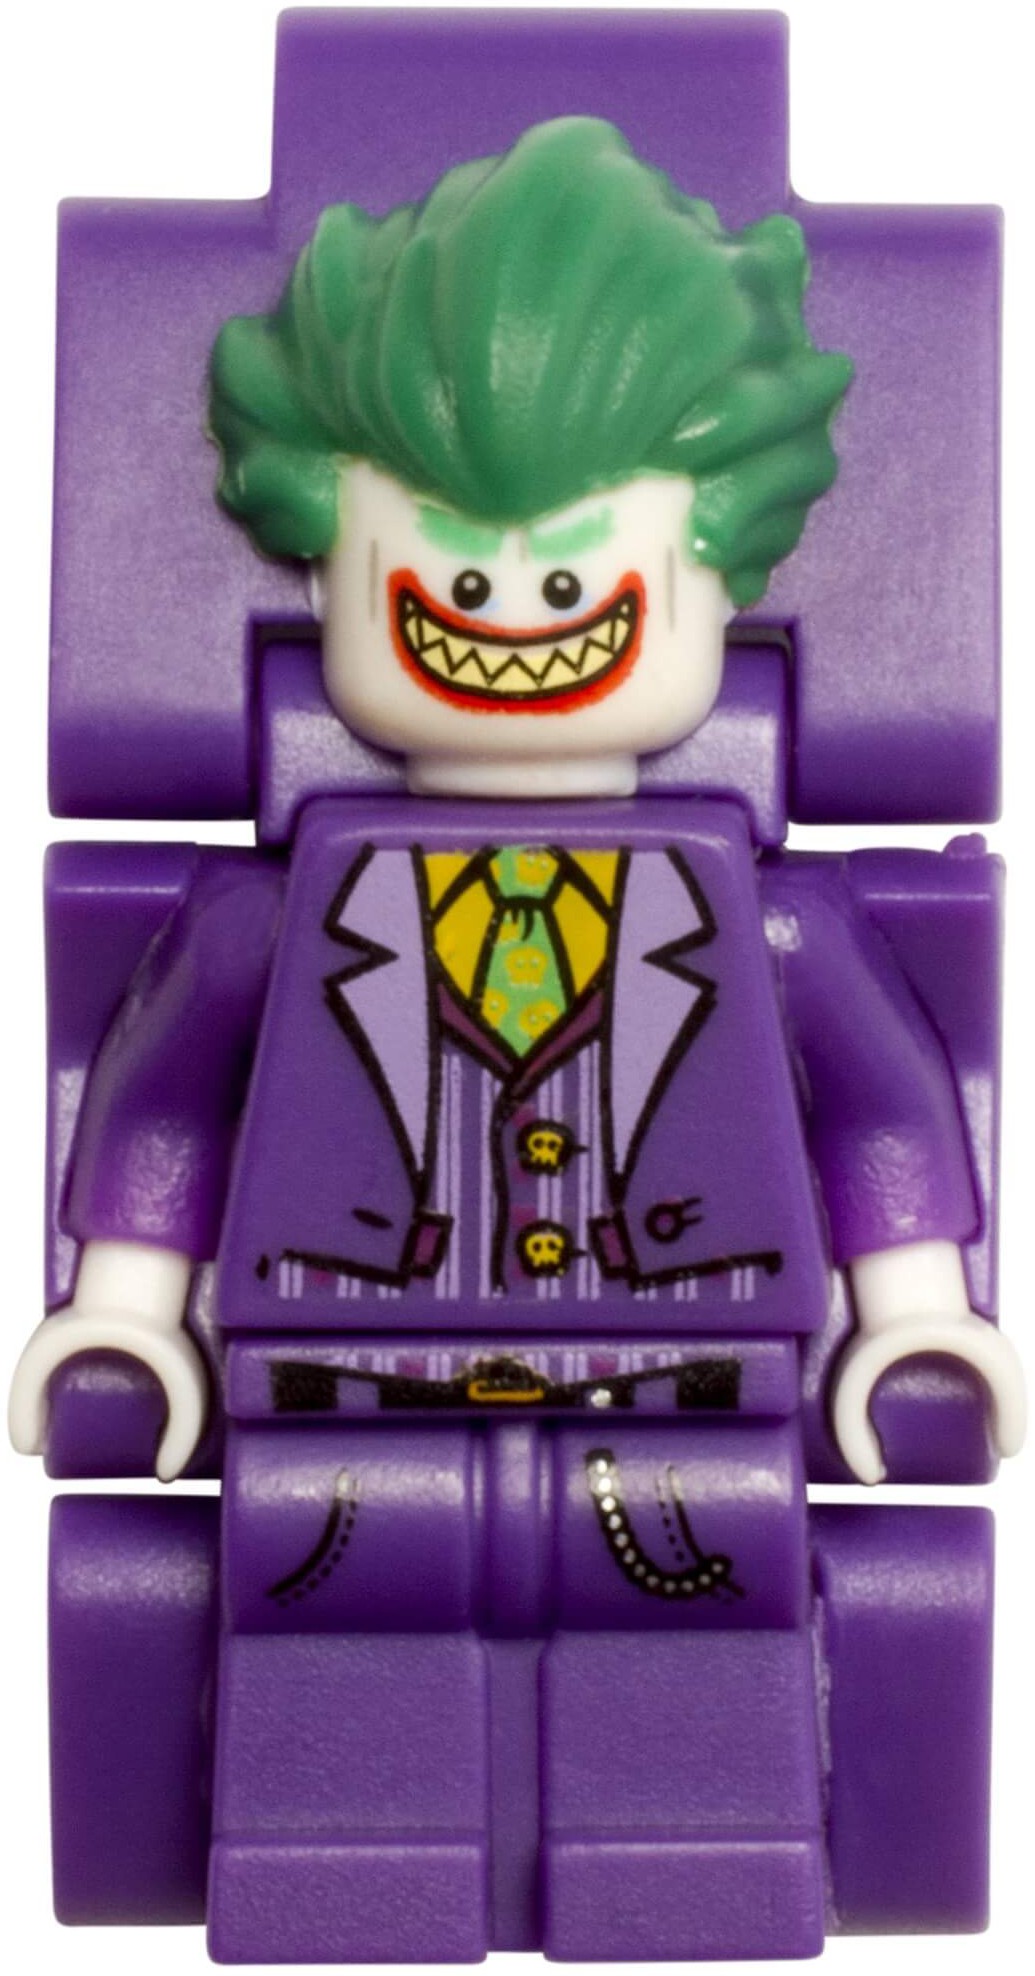 LEGO Batman - The Joker Link Watch - Heromic